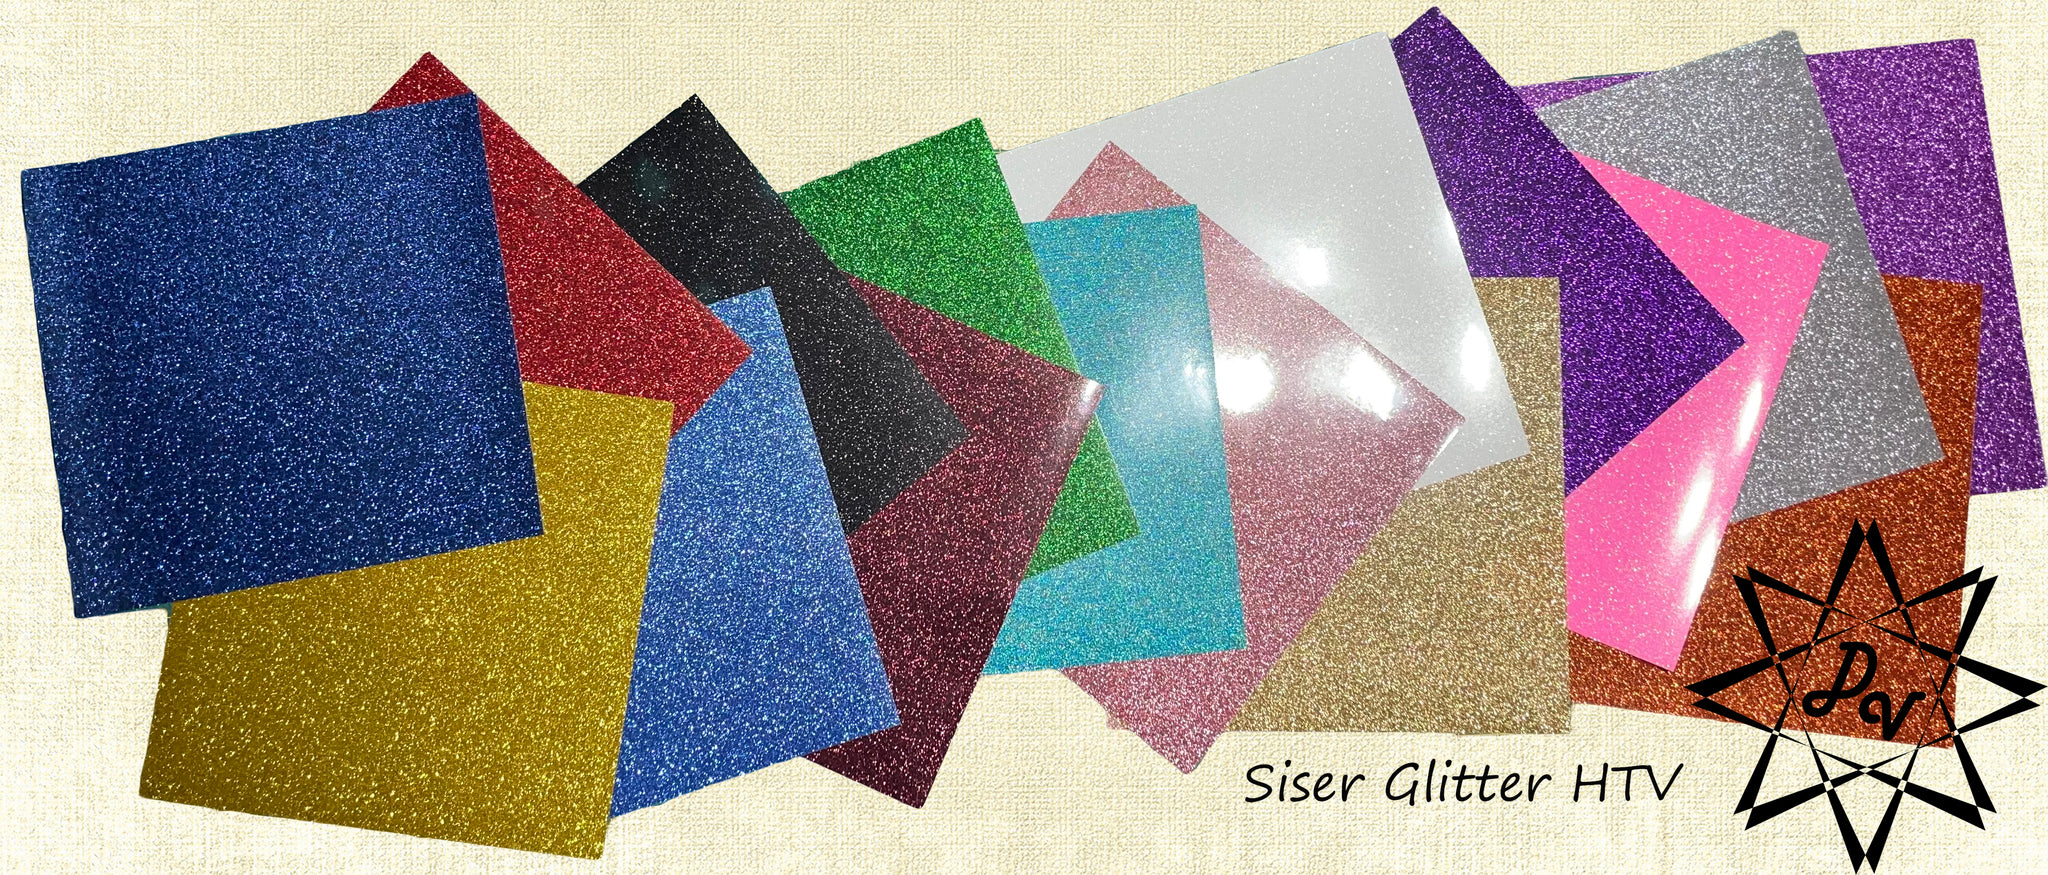 Siser Glitter HTV {{5 Ft. ROLL}} – Speedy Vinyl